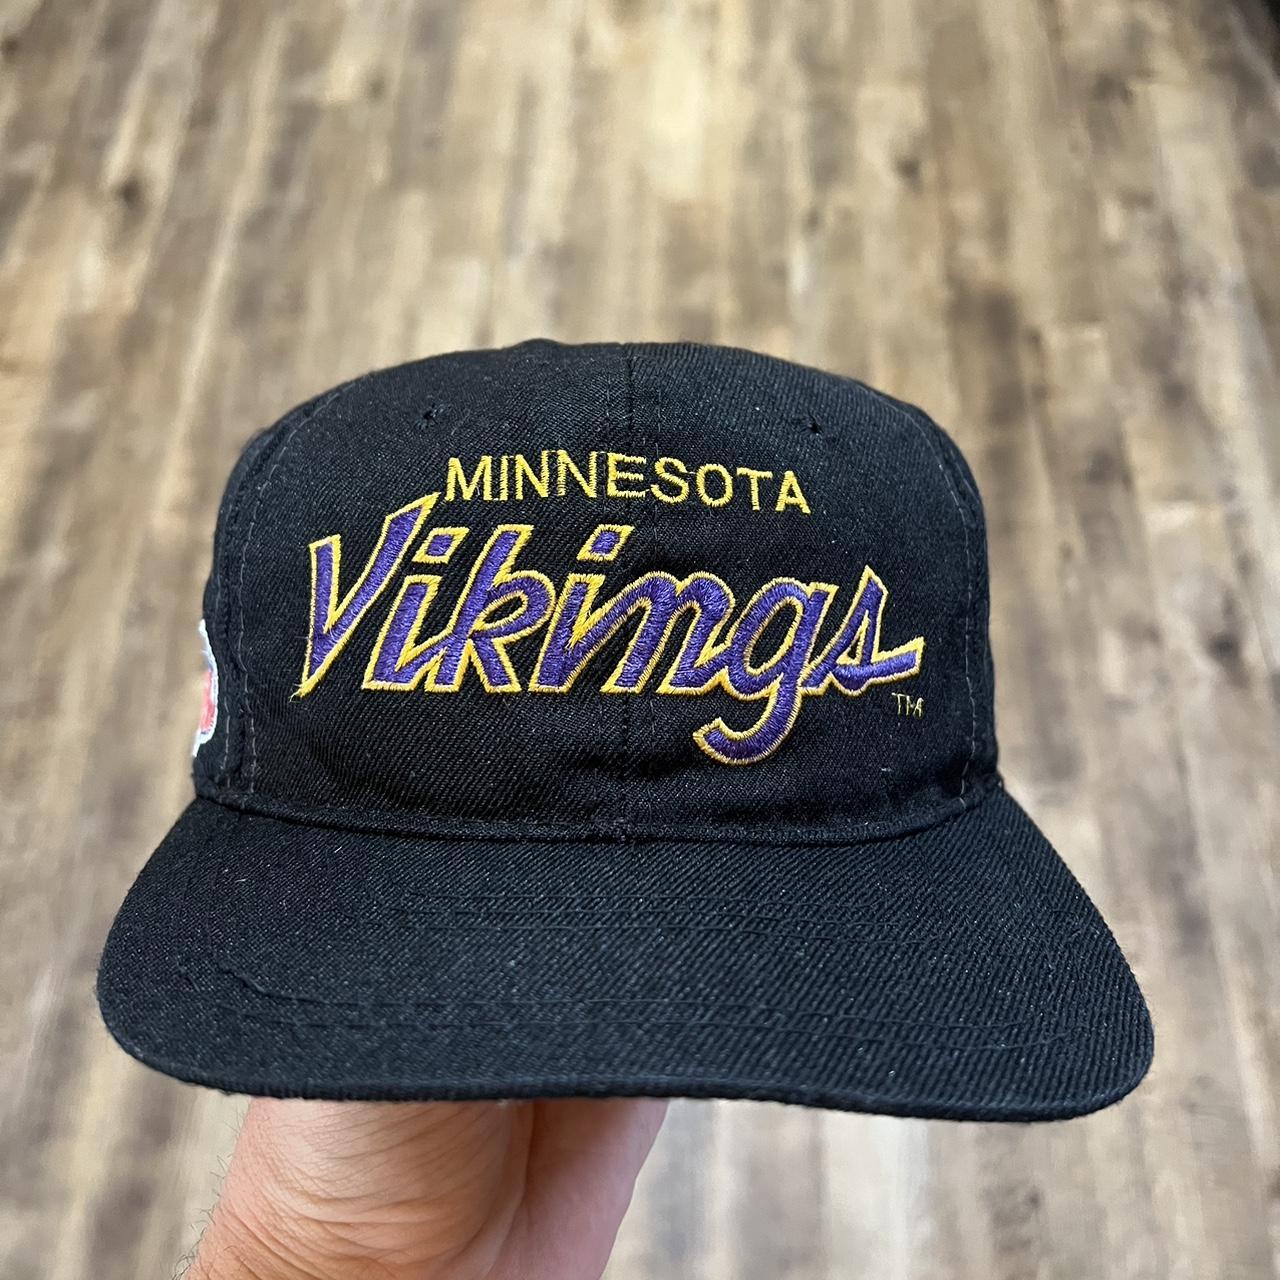 Rare Vintage Hats in Stock | Vintage Minnesota Snapback